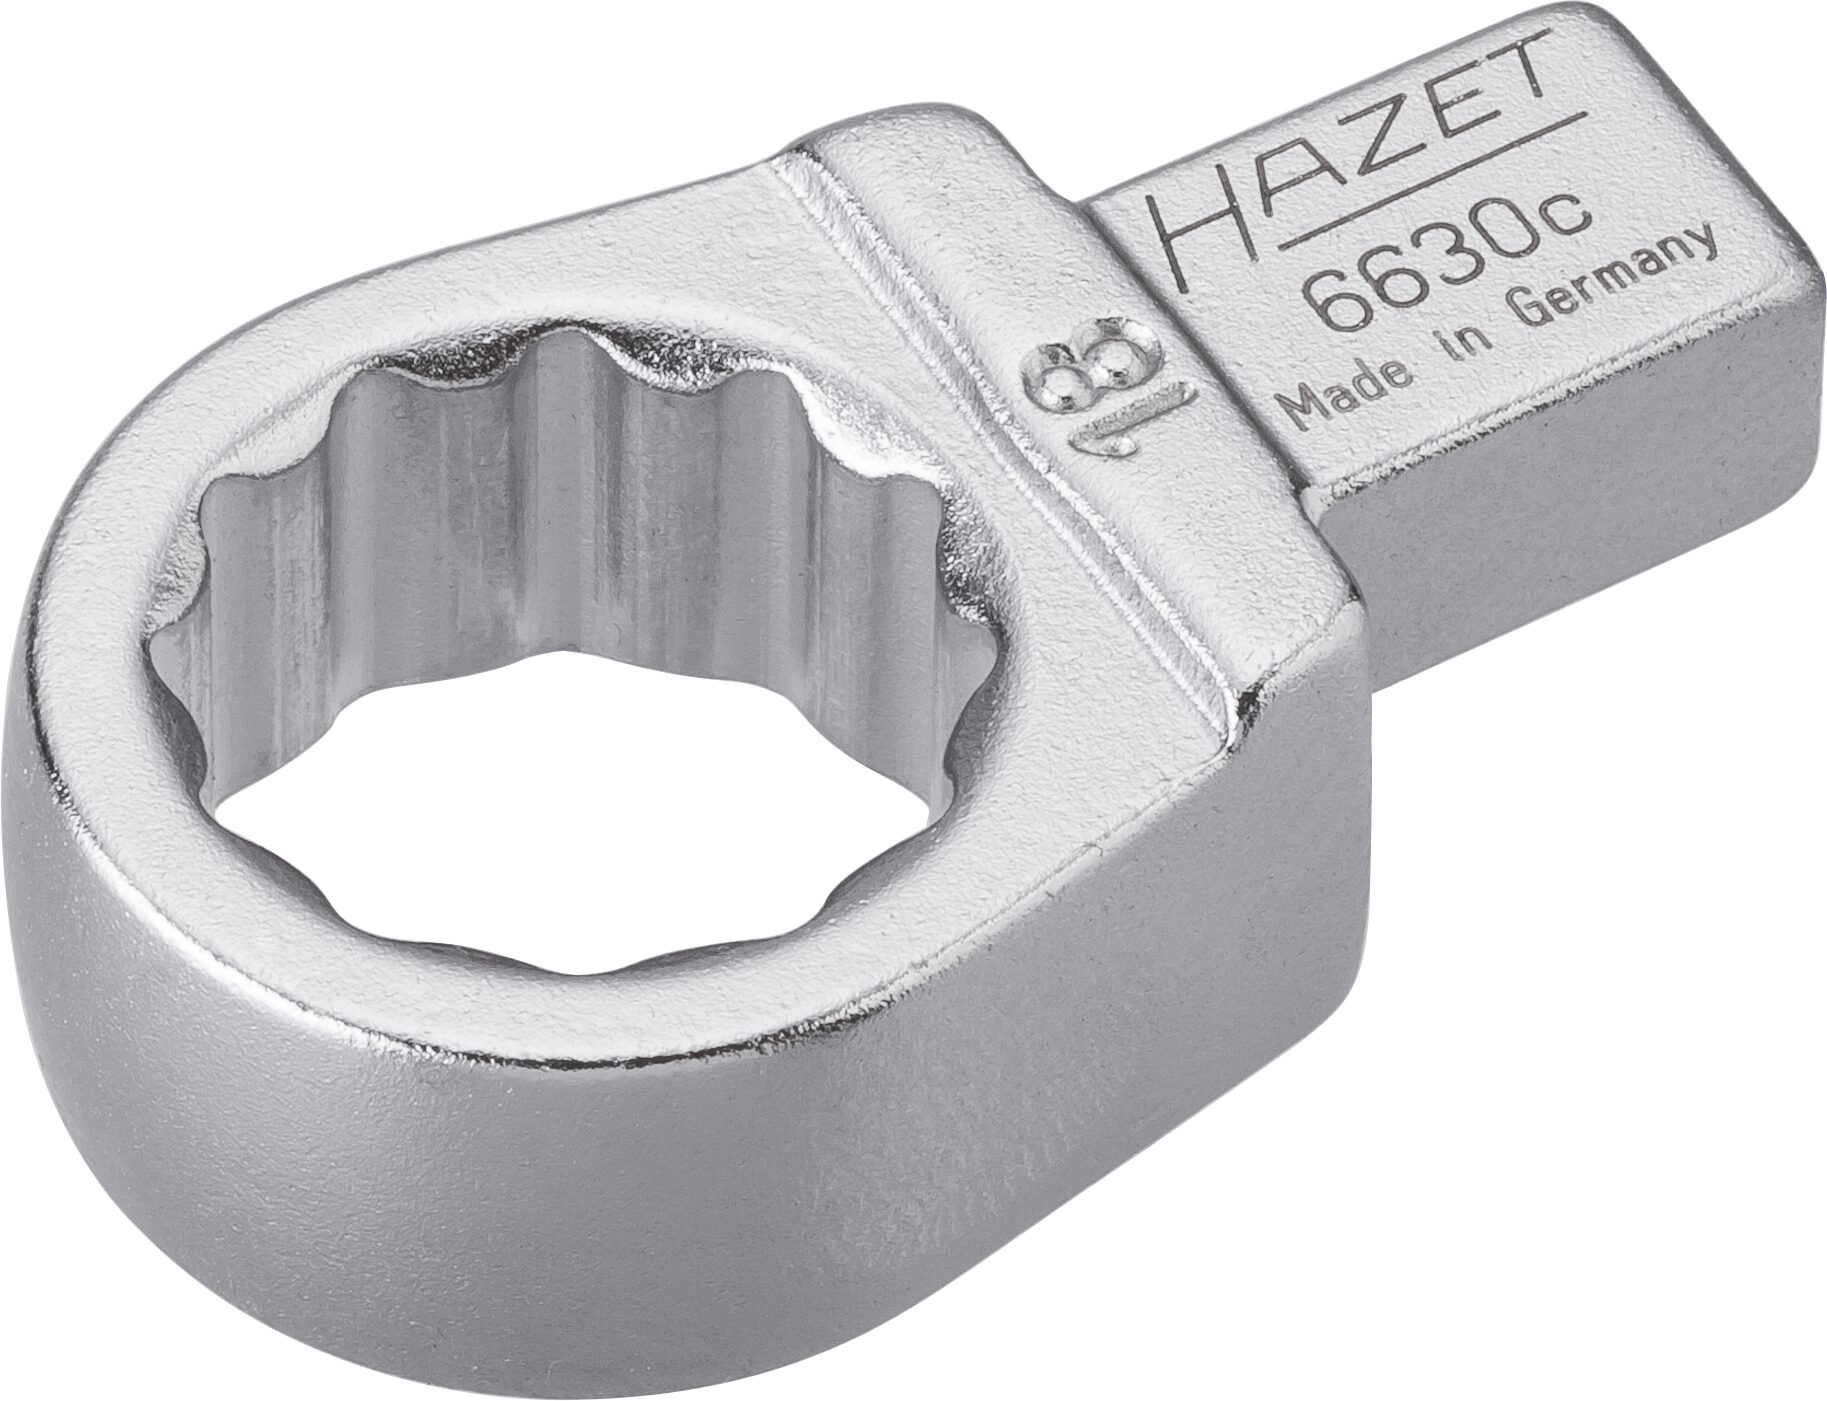 HAZET Einsteck-Ringschlüssel 6630C-18 · Einsteck-Vierkant 9 x 12 mm · Außen Doppel-Sechskant-Tractionsprofil · 18 mm